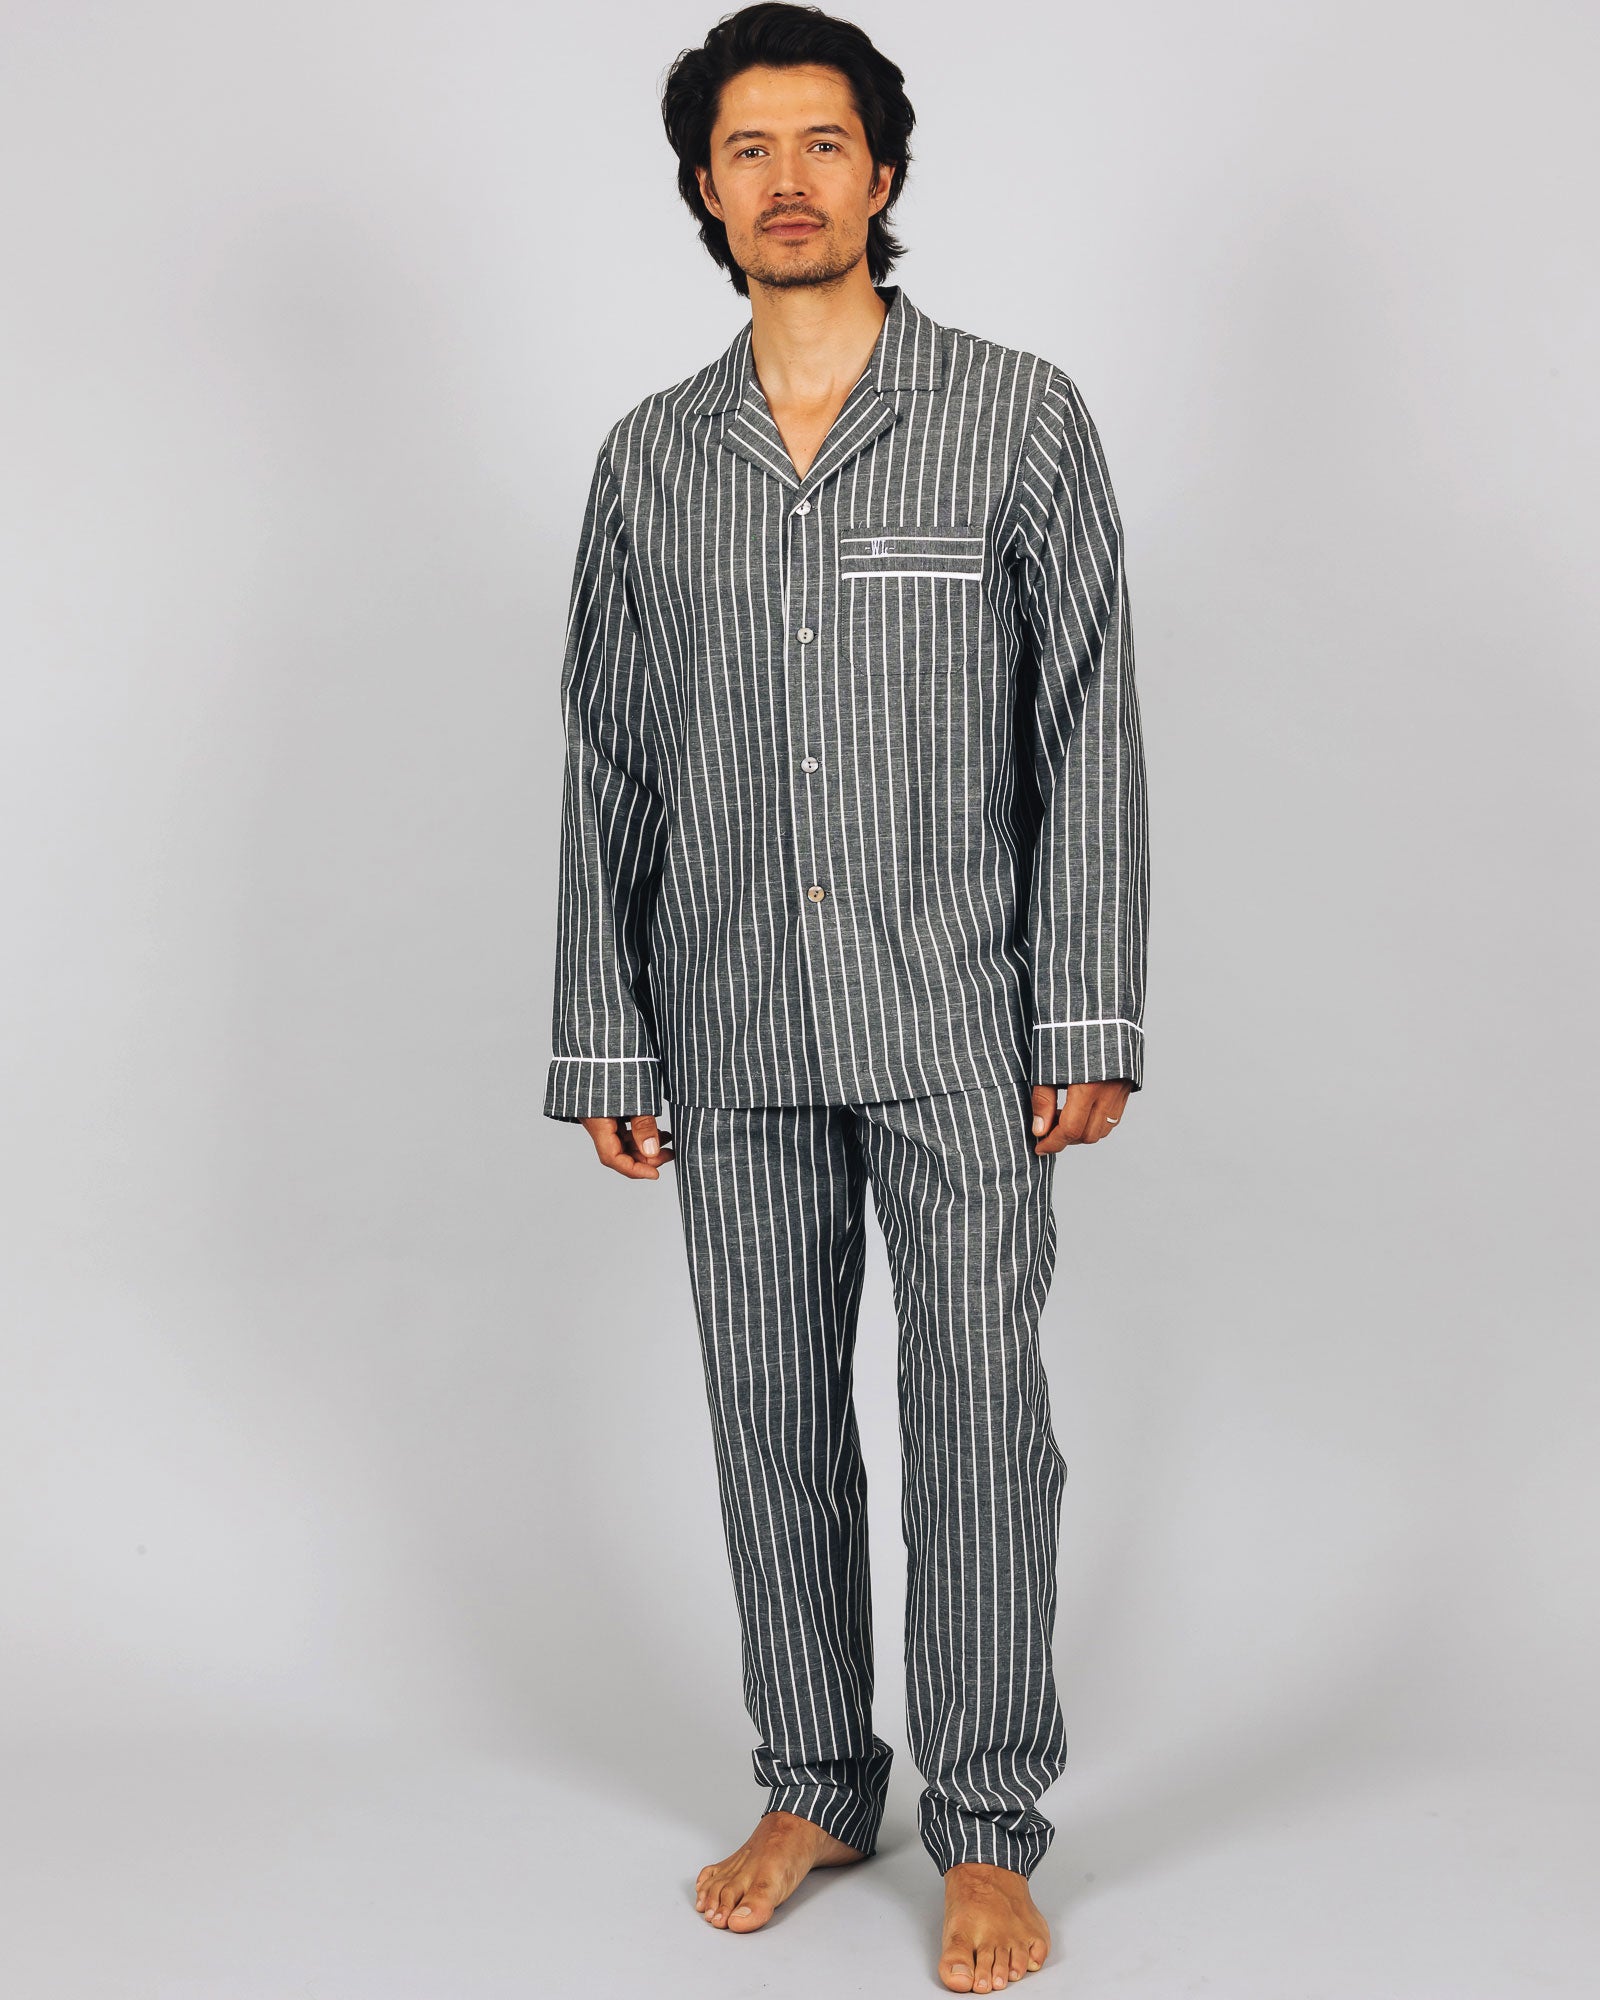 Men Bath Robes Sleepwear Dressing Gown Kimono Loungewear Nightwear Cotton  Casual | eBay